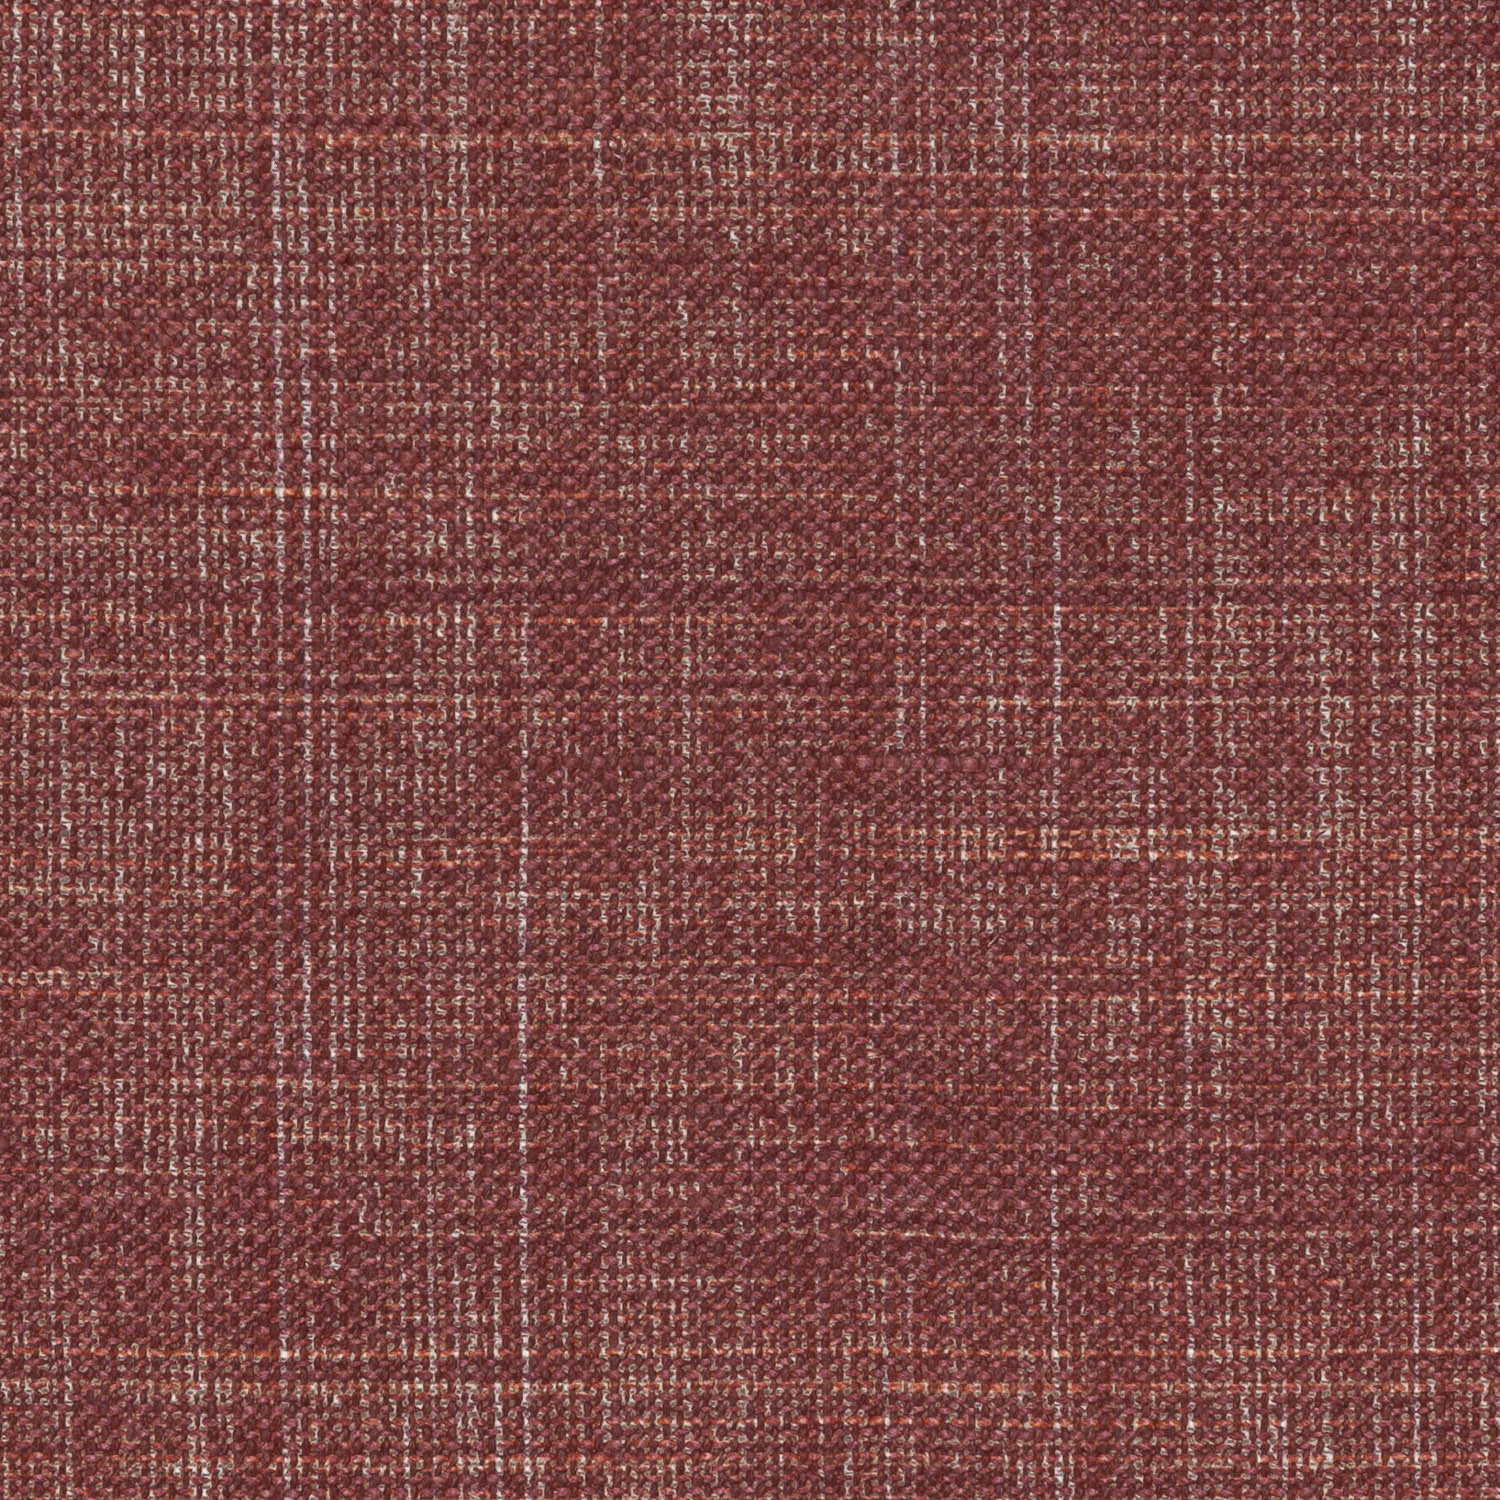 n-003-red-plain-linen-satchel-1.jpg